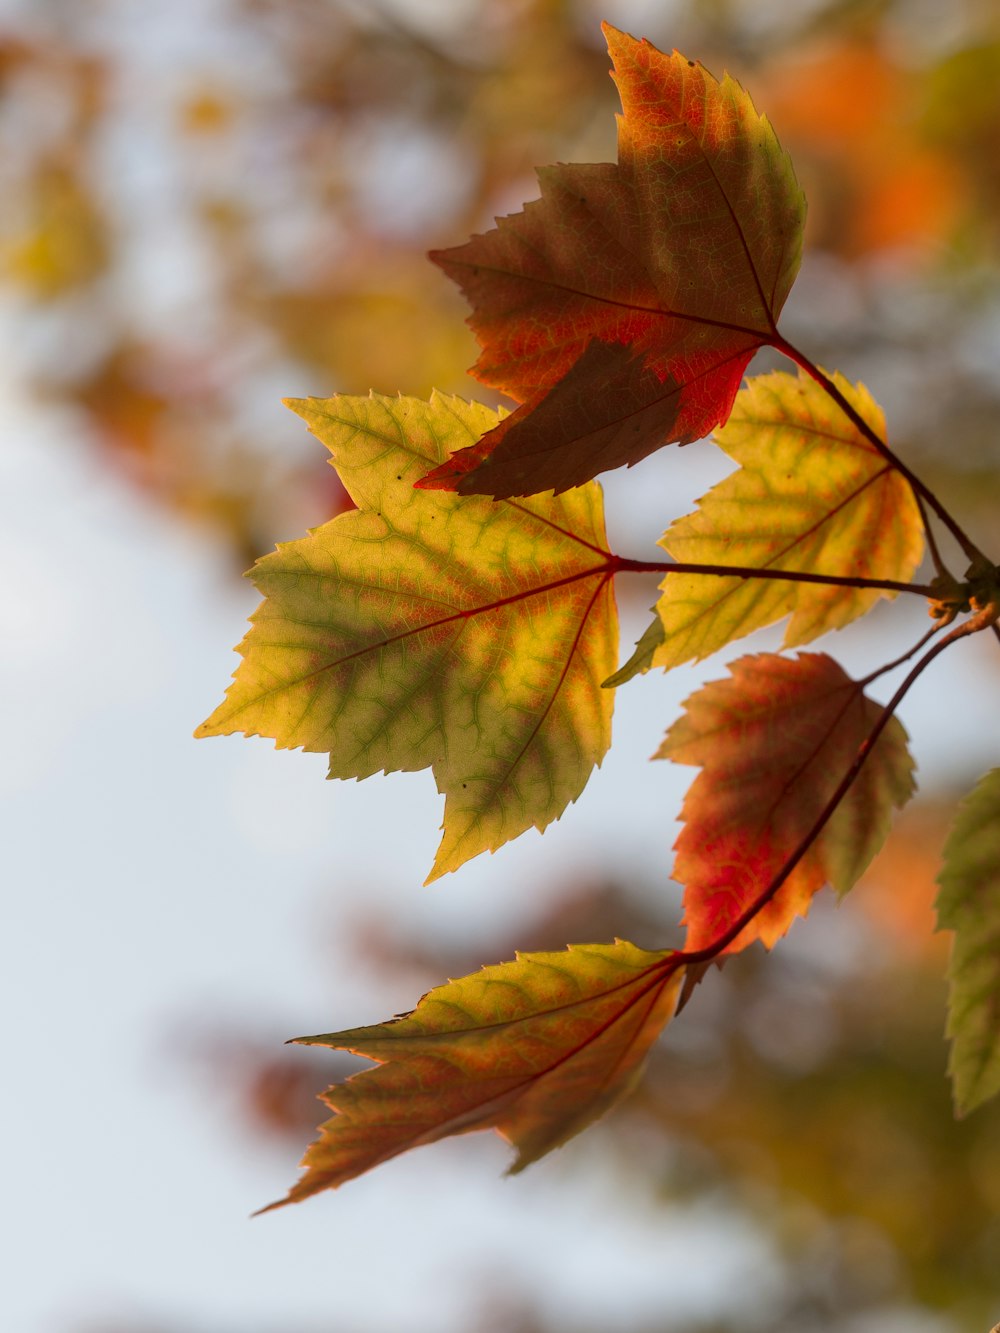 Mùa thu đến rồi, bạn có muốn tìm kiếm những bức ảnh lá cam vàng tuyệt đẹp để cảm nhận được không khí của mùa thu? Hãy ghé thăm chúng tôi và khám phá những bức ảnh mùa thu tuyệt đẹp, mang đến cho bạn trải nghiệm tuyệt vời trong từng khoảnh khắc.